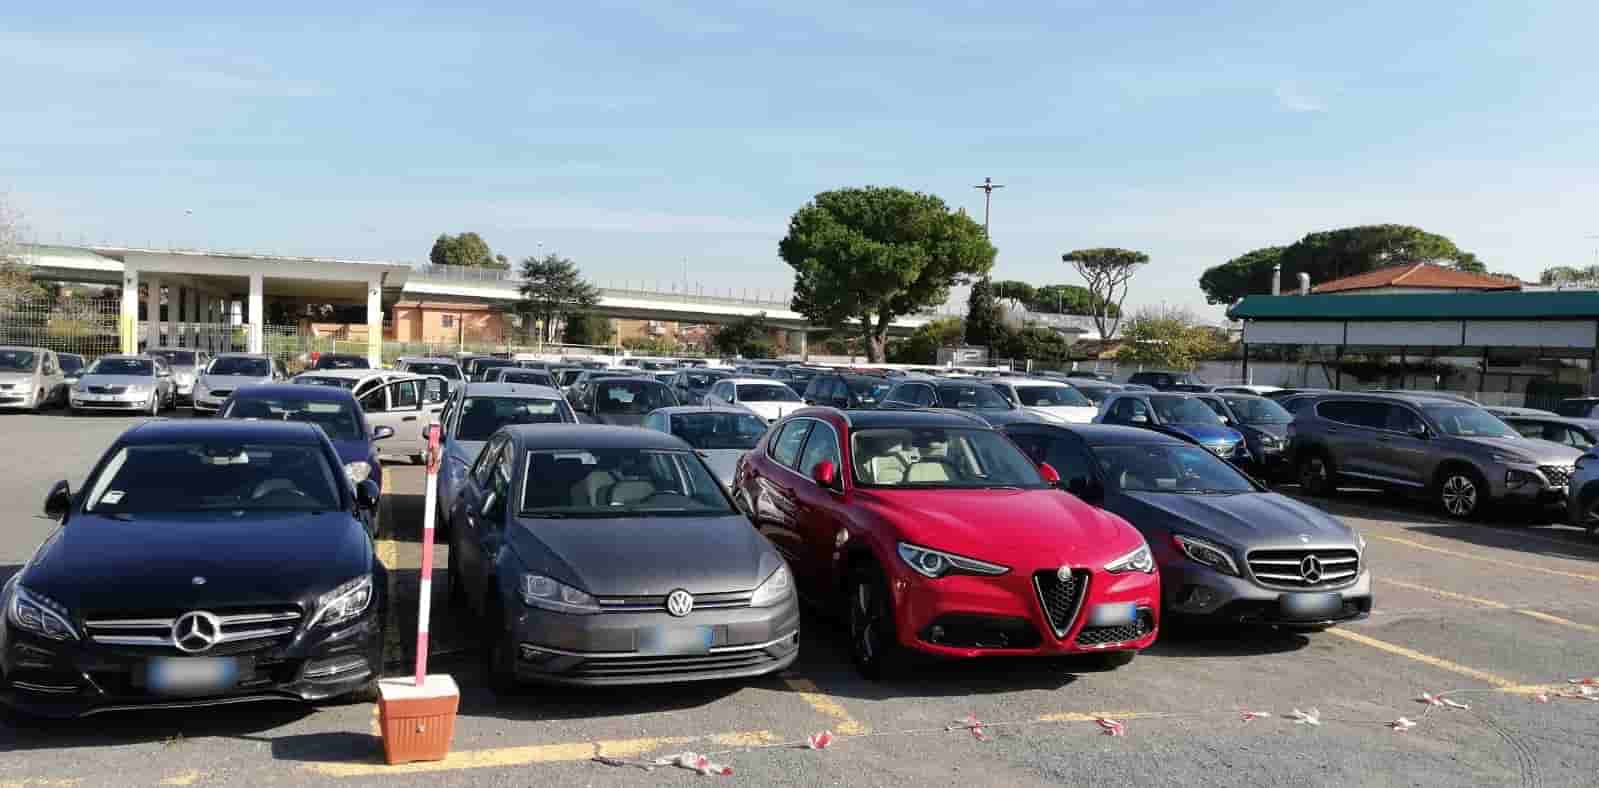 Posti auto scoperti Parking Service - Aeroporto Roma Fiumicino